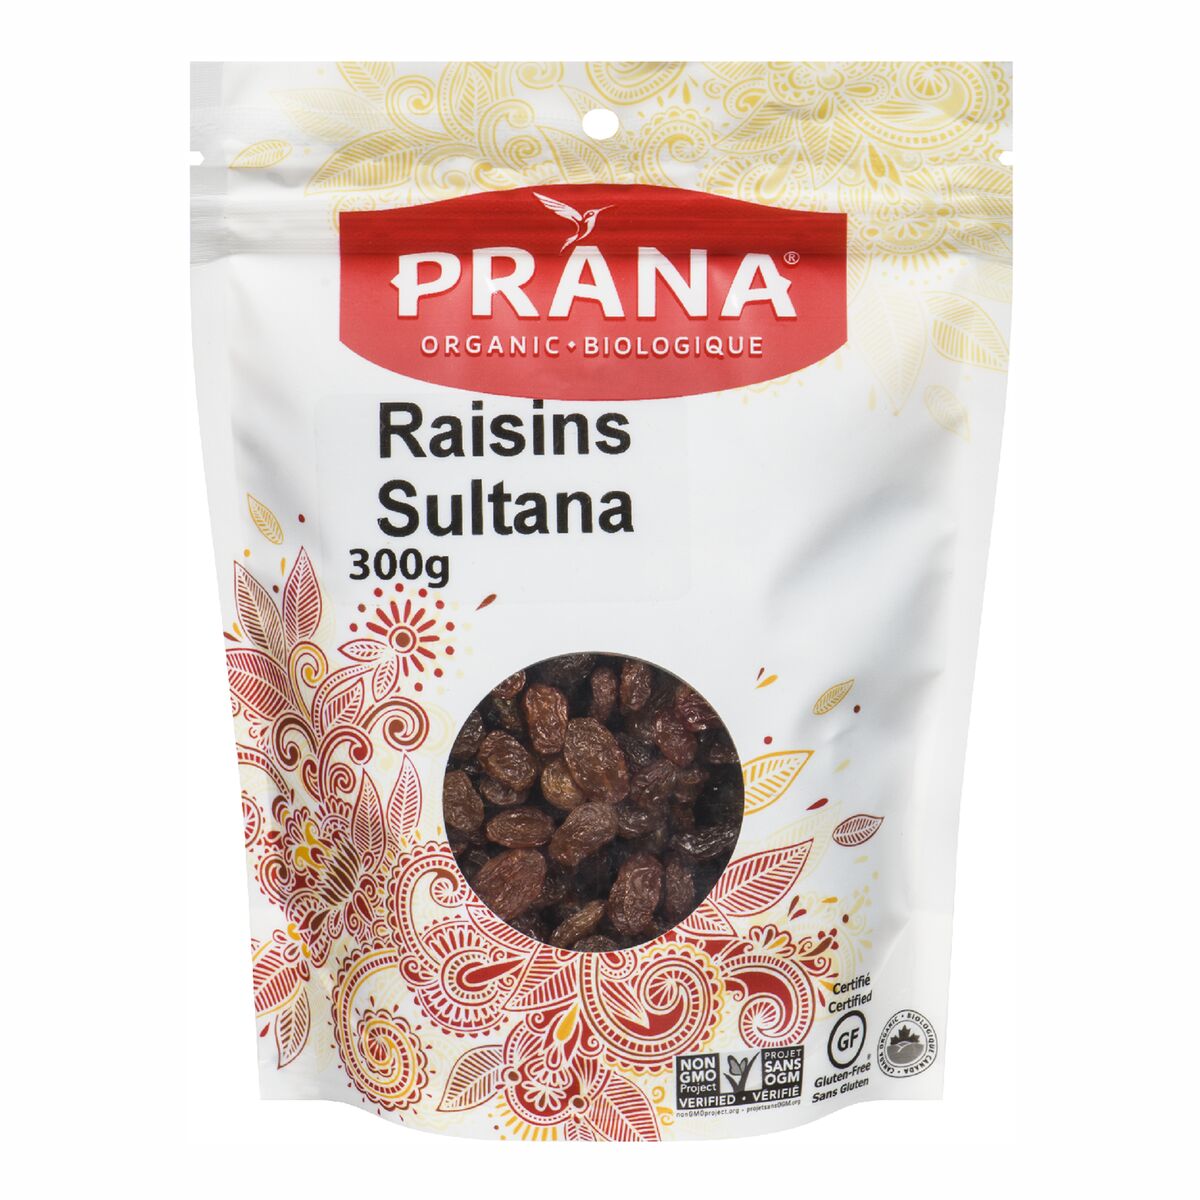 Prana Sultana Raisins 300g